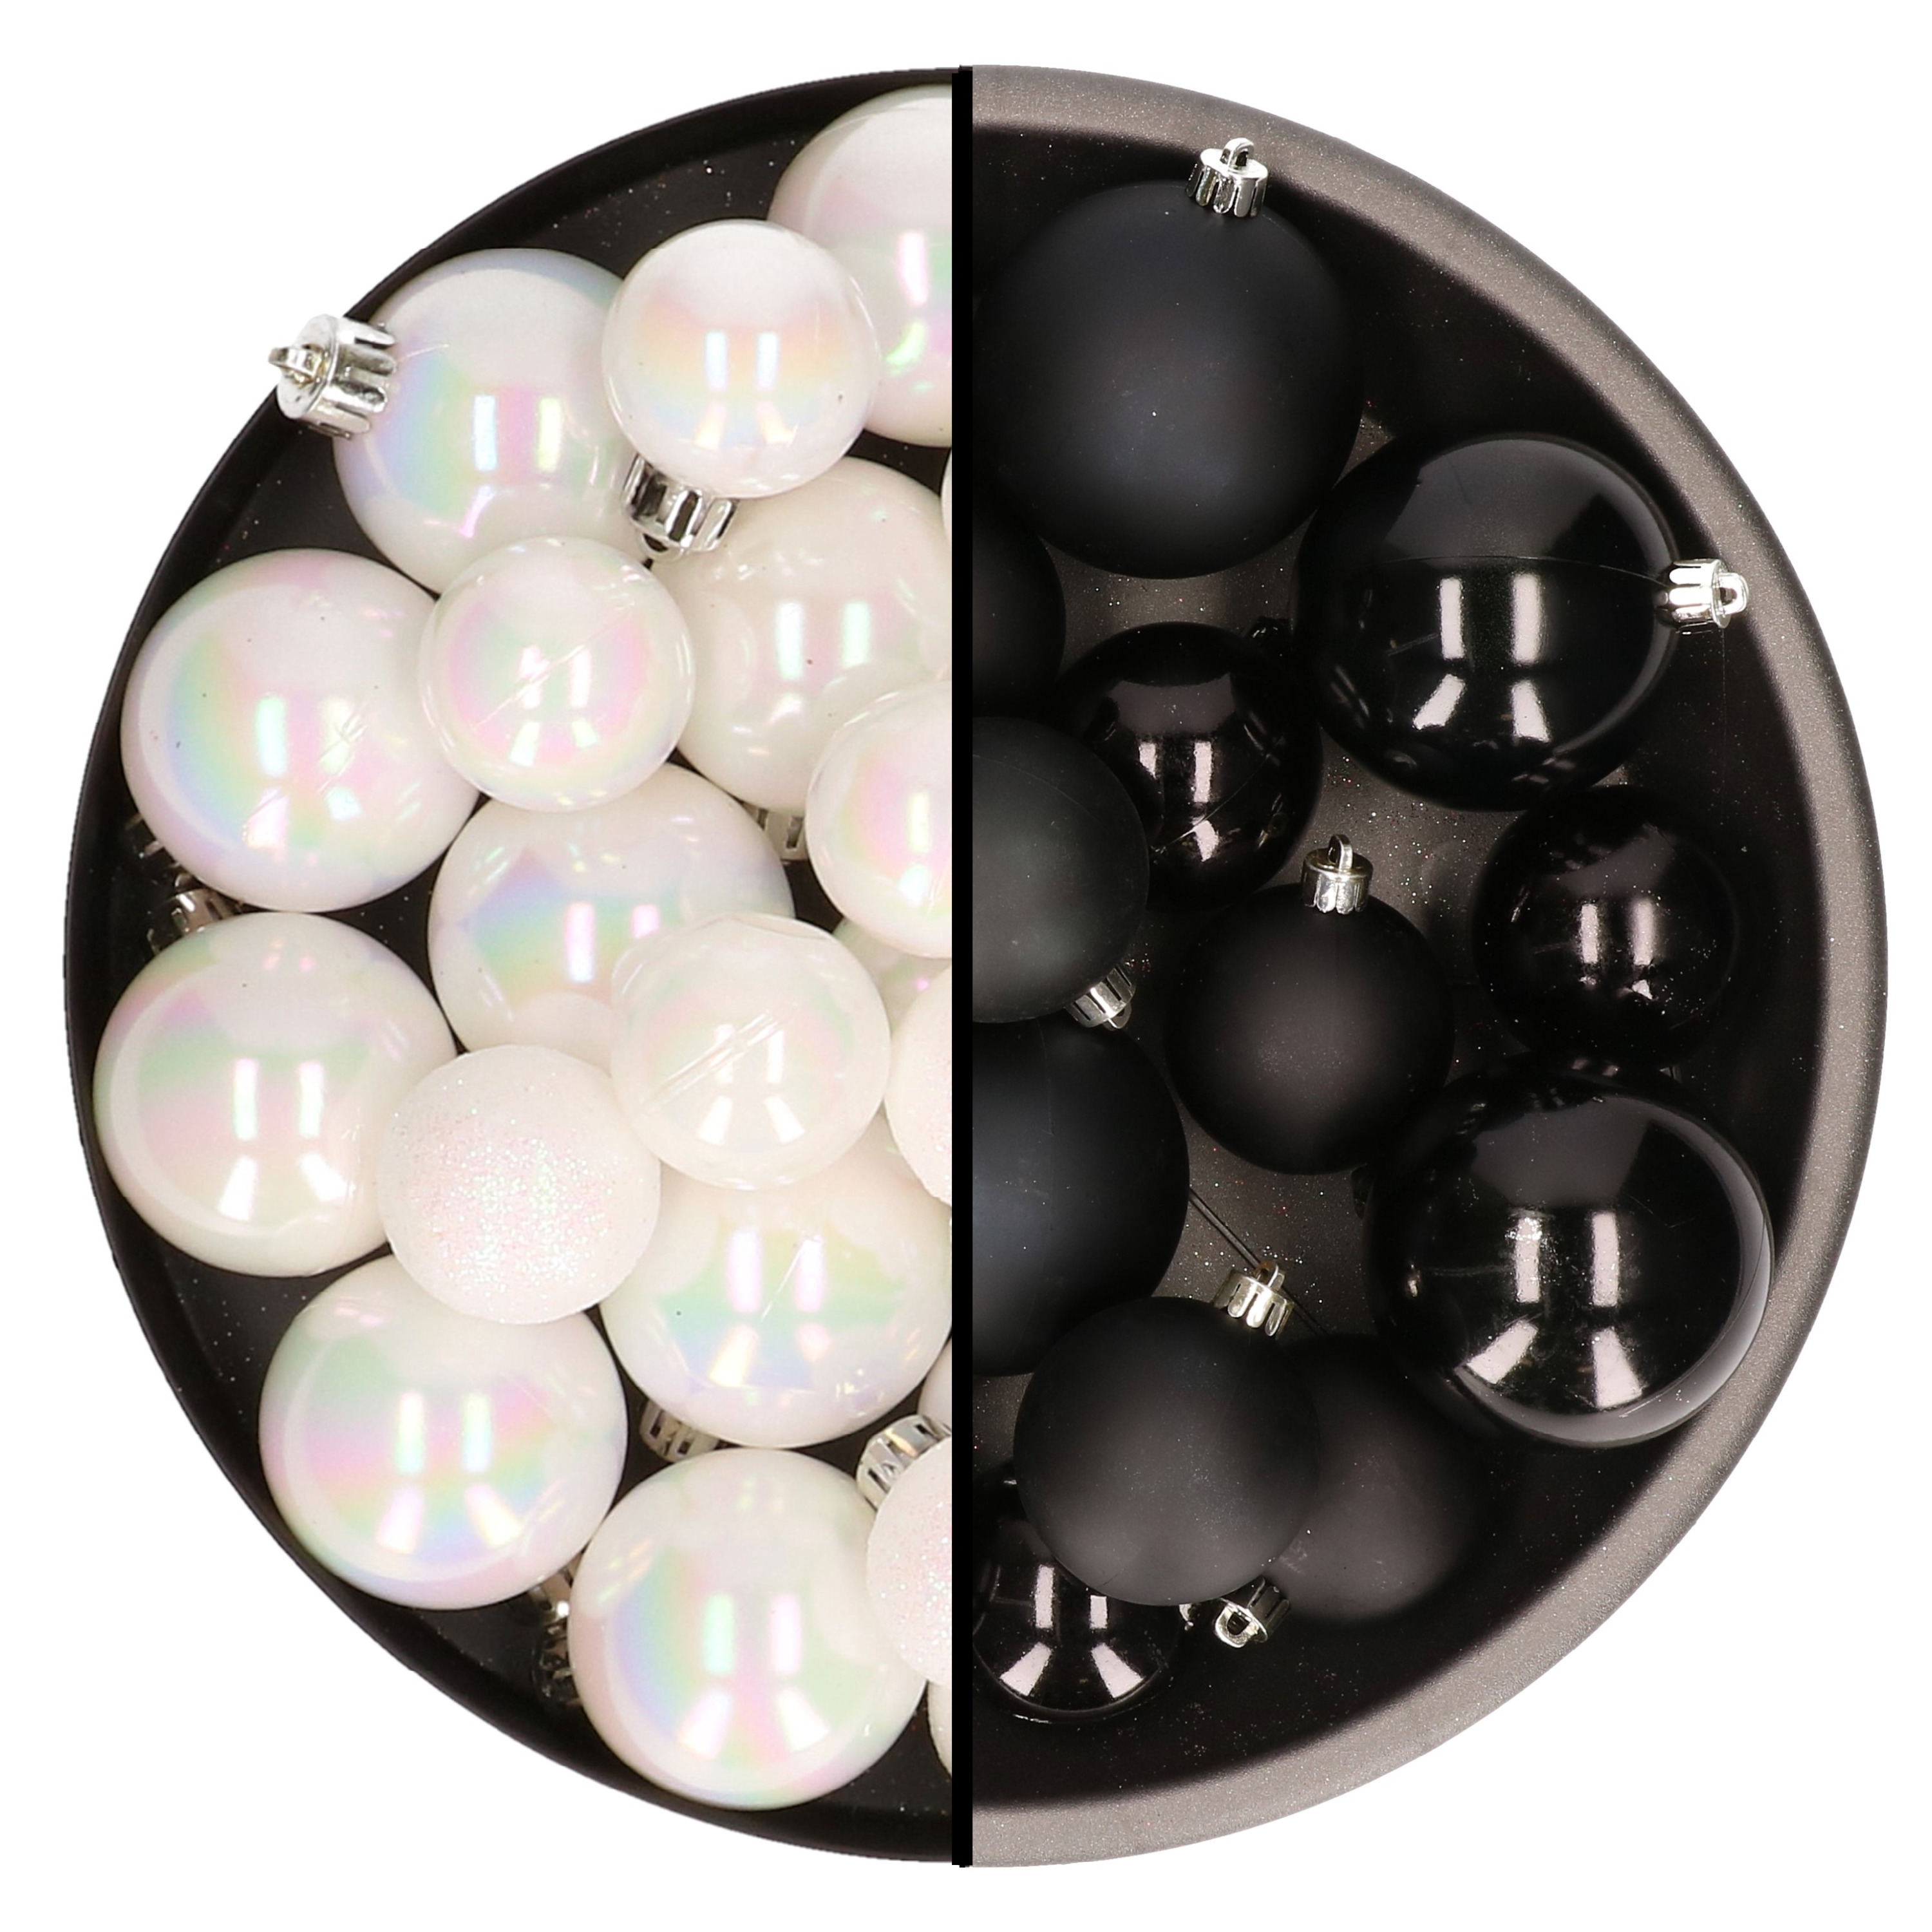 Kerstversiering kunststof kerstballen mix zwart-parelmoer wit 4-6-8 cm pakket van 68x stuks